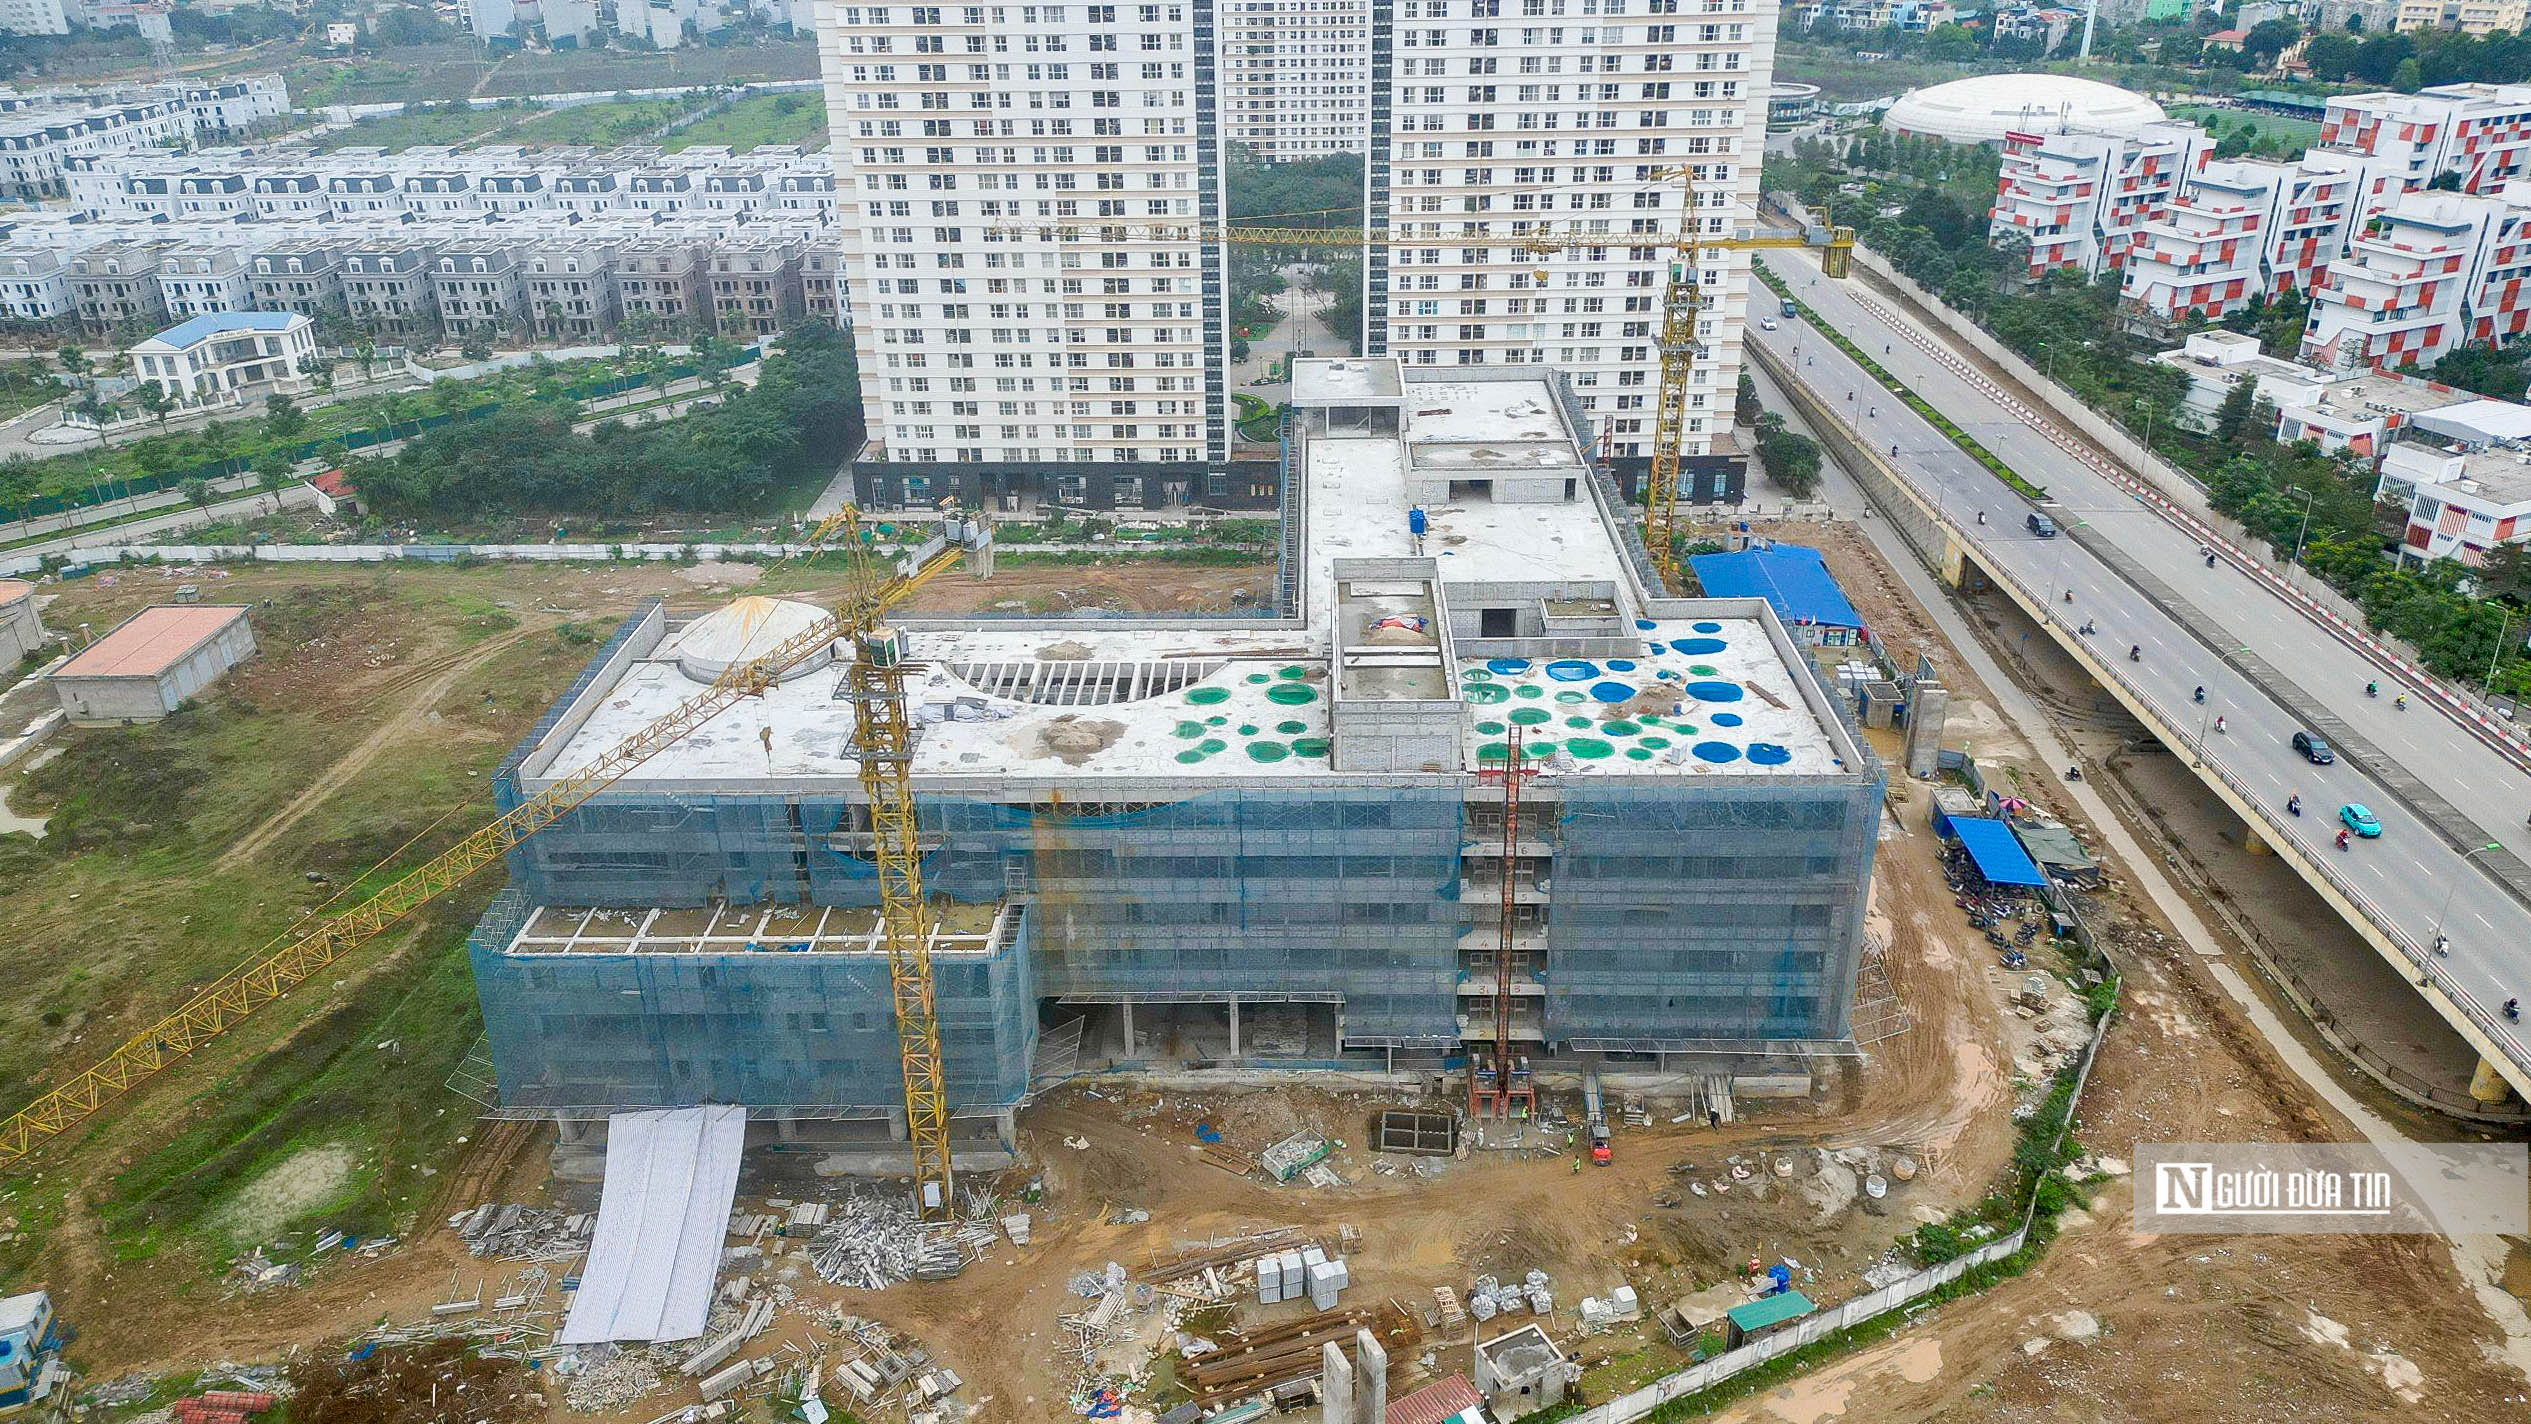 Bất động sản - Toàn cảnh Bệnh viện Nhi Hà Nội gần 800 tỷ đồng sau gần 1 năm thi công (Hình 5).